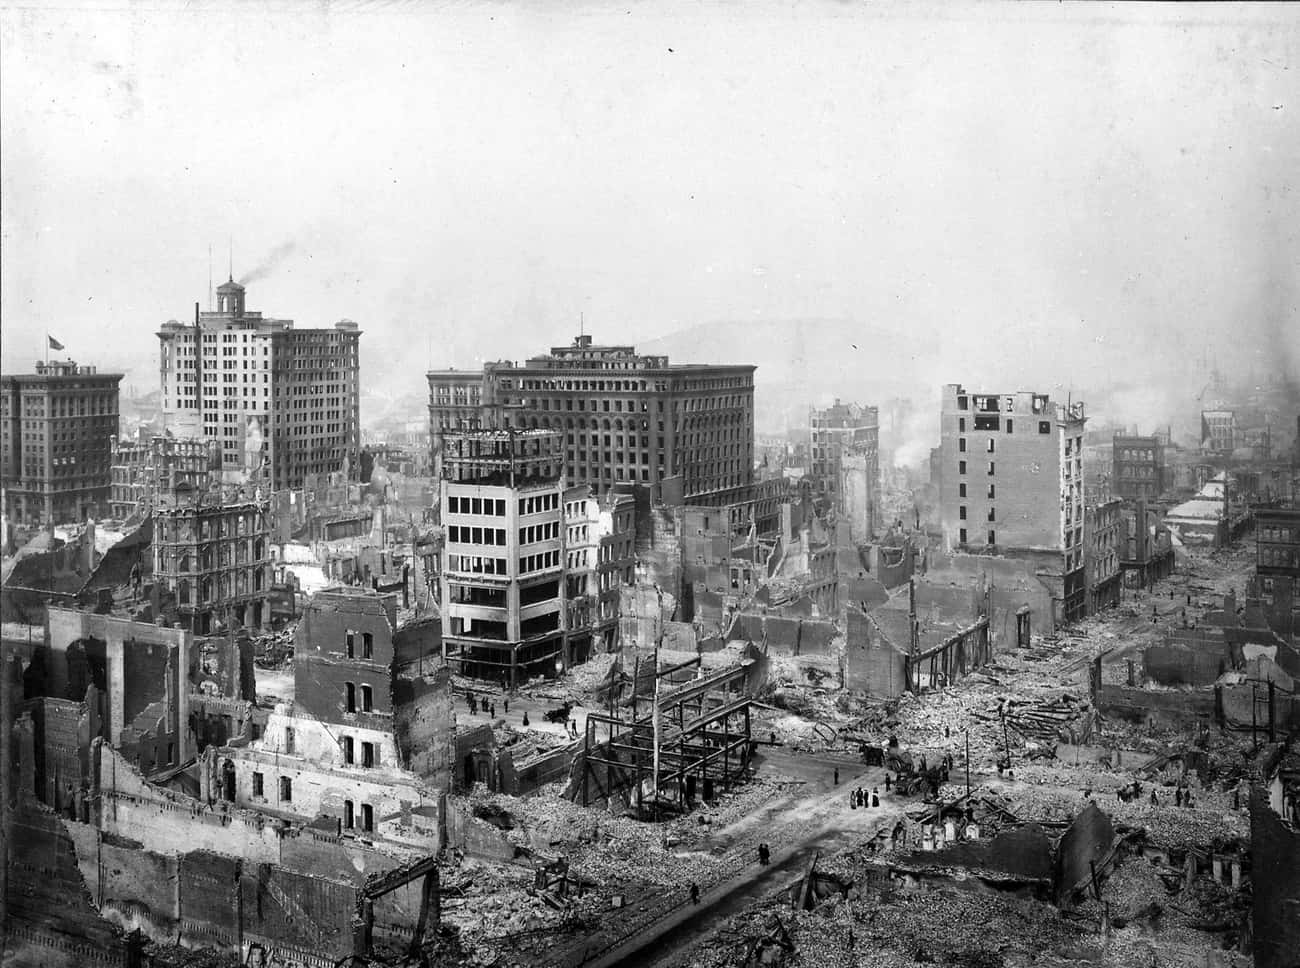 1906 San Francisco Earthquake